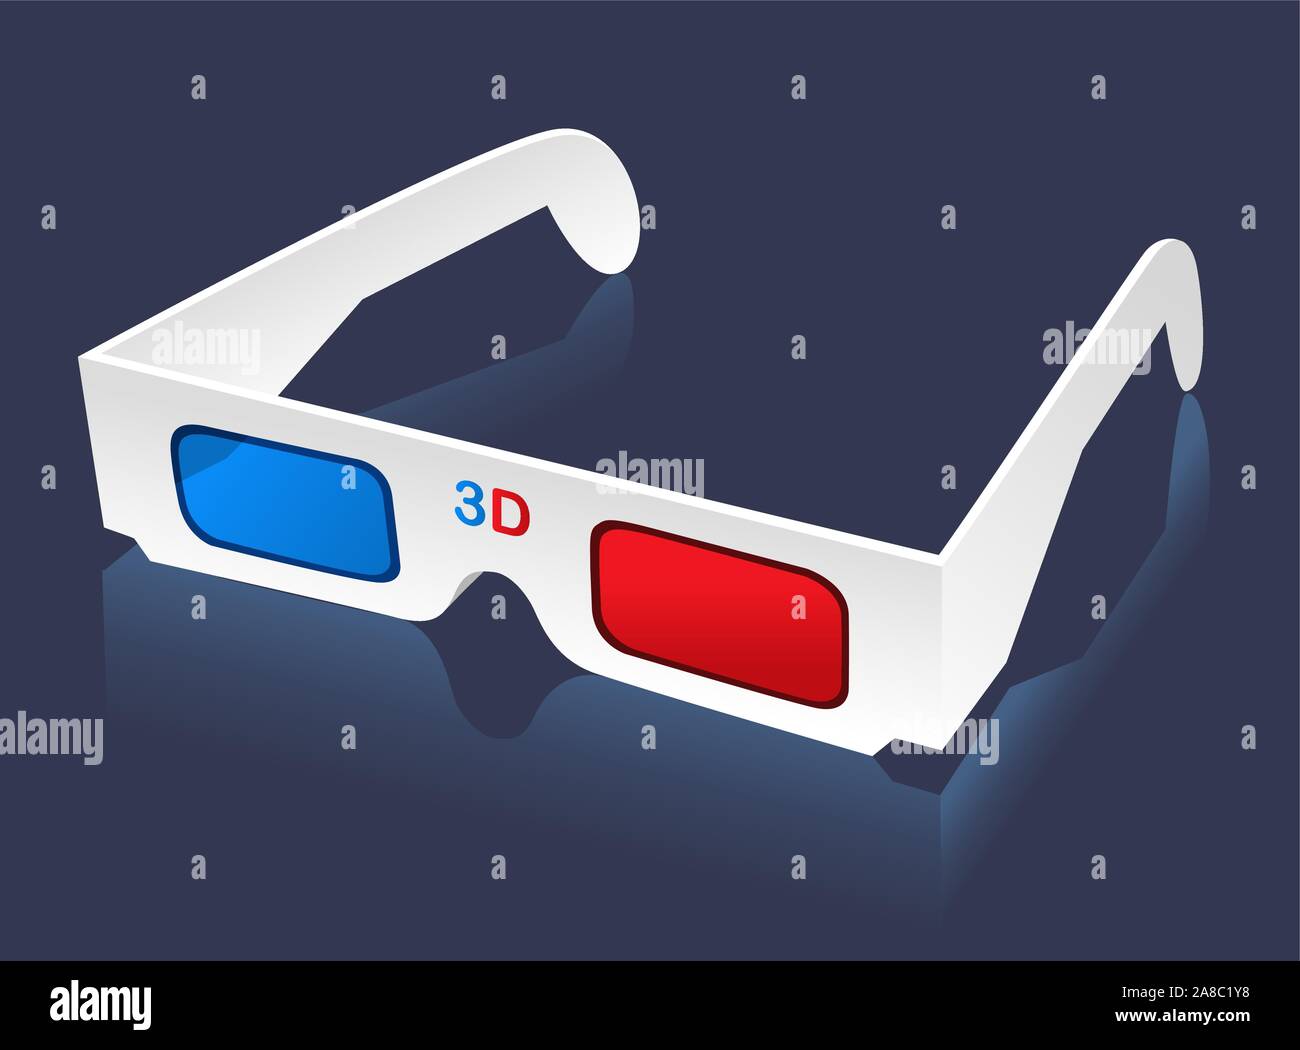 3D glasses eye-wear vector illustration. Stock Vector